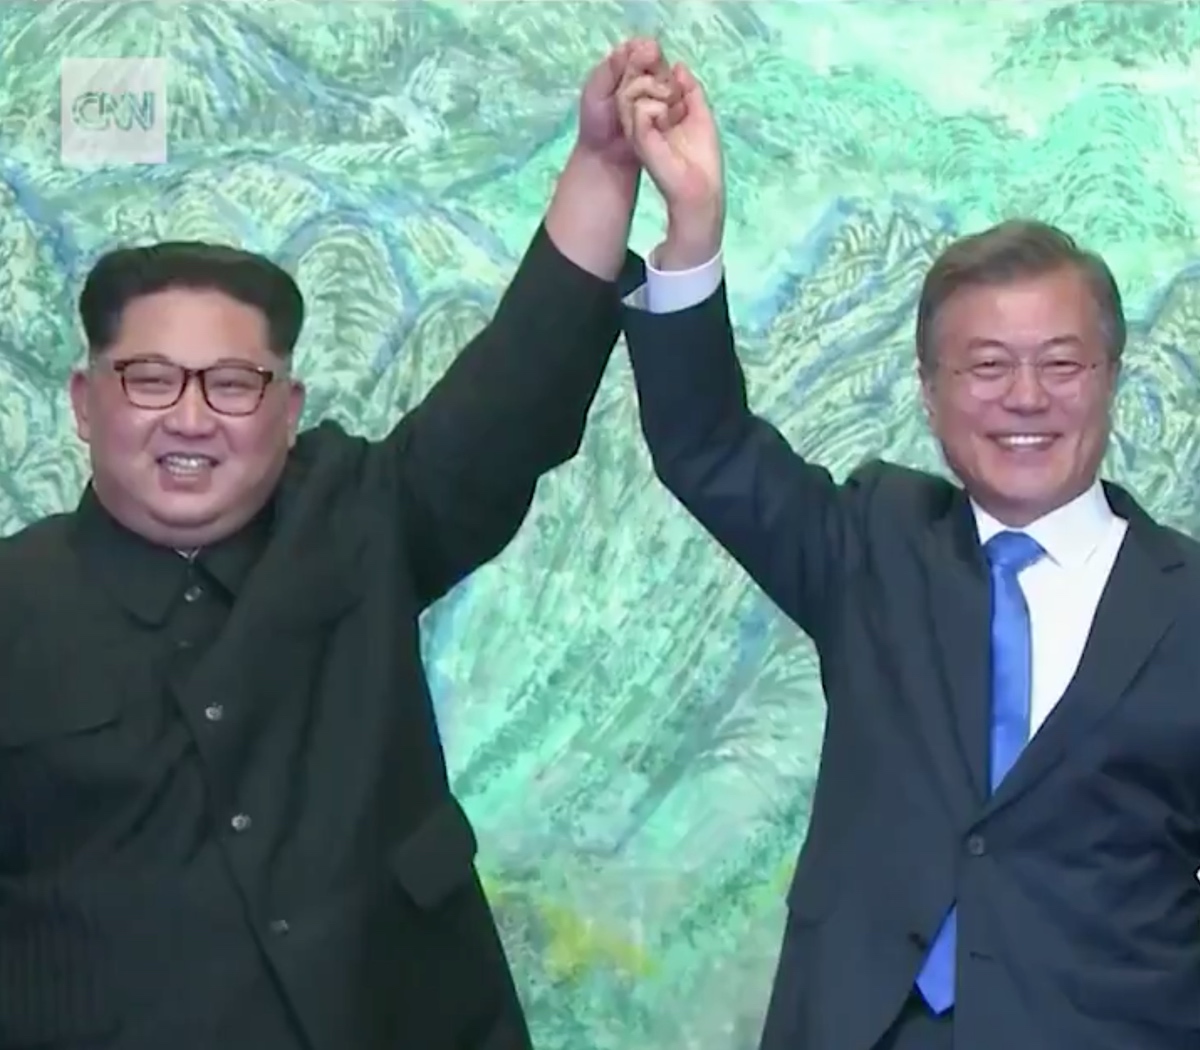 Kim Jong-un et Moon Jae-in, dirigeants des deux Corées, lors d'une rencontre inédite le 27 avril 2018